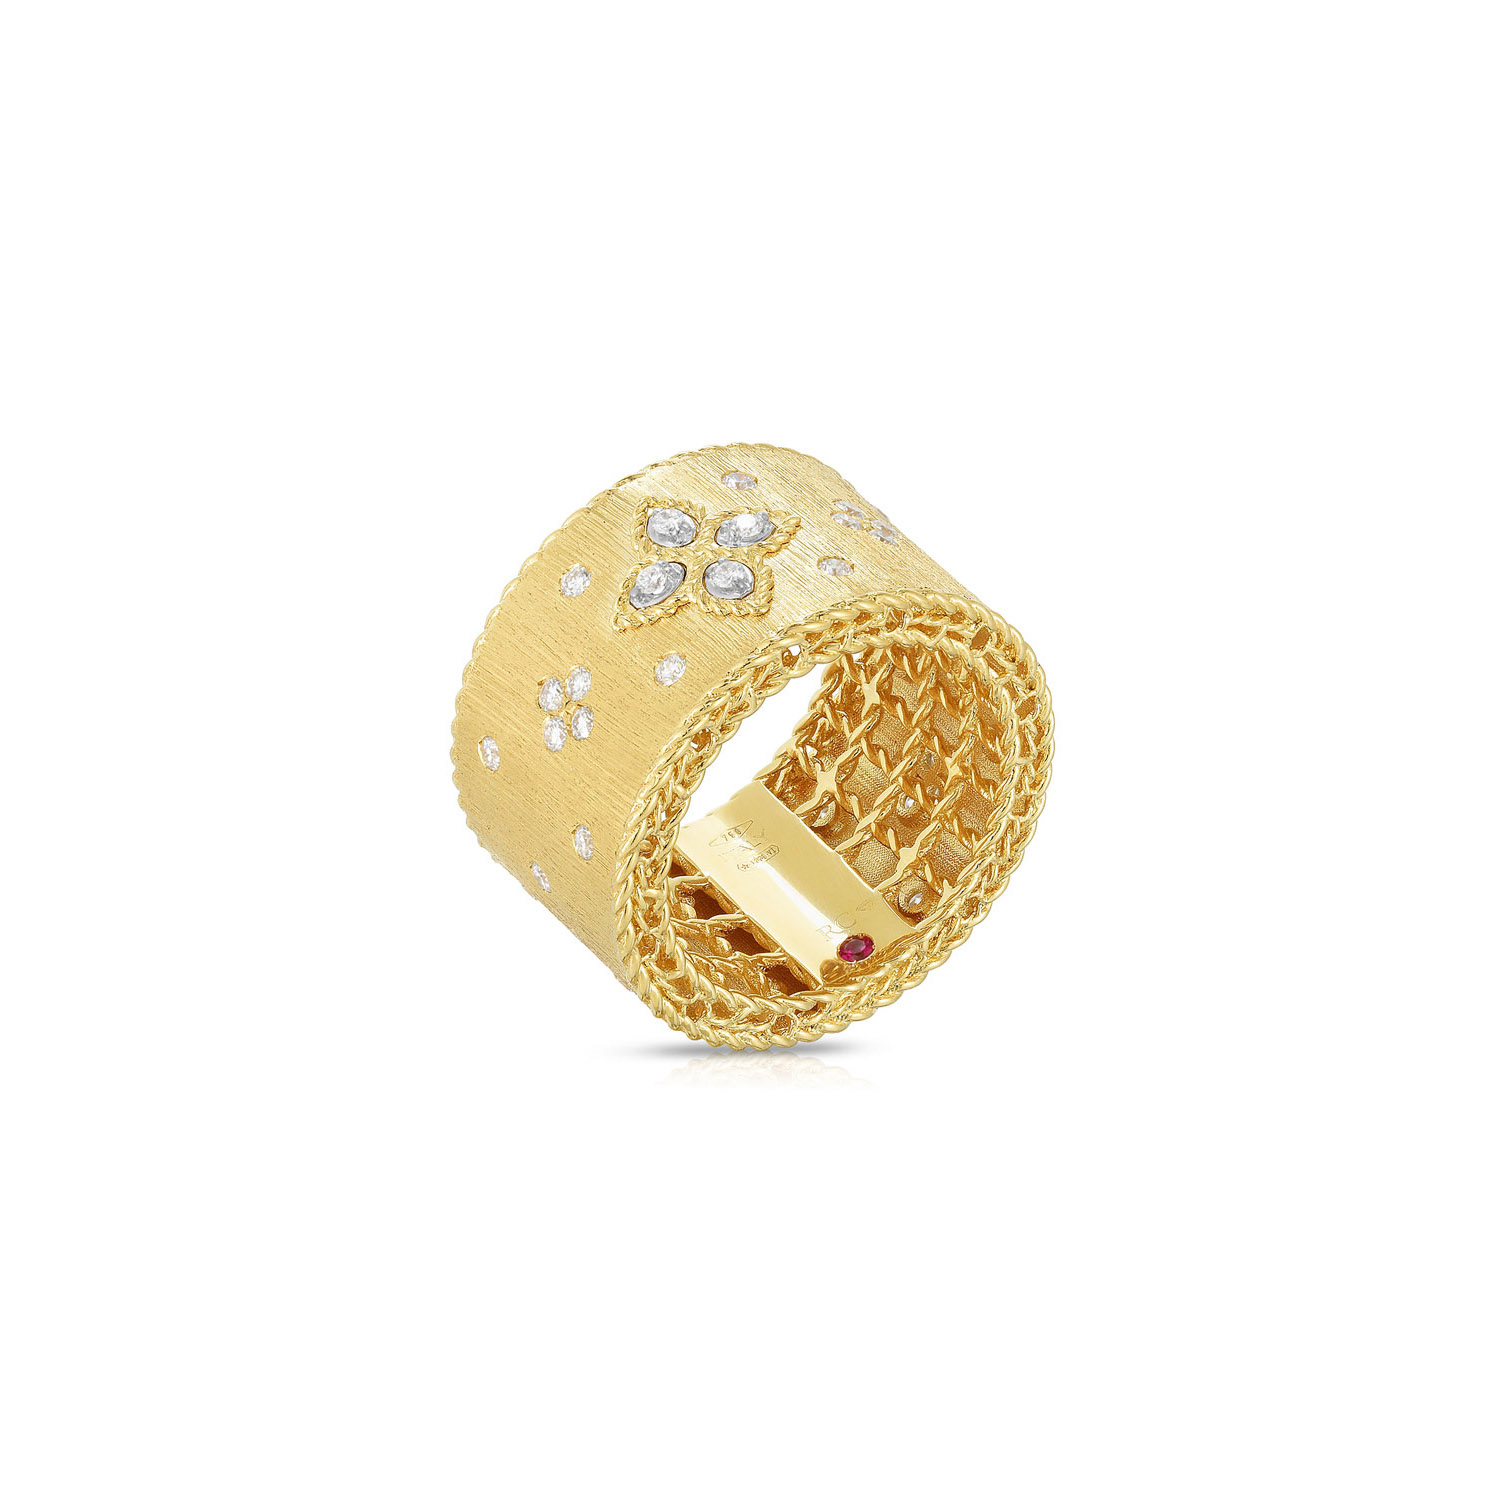 الجملة OEM / ODM مجوهرات مخصصة 18K الذهب مصمم المجوهرات الفاخرة الأميرة البندقية الماس خاتم المرأة